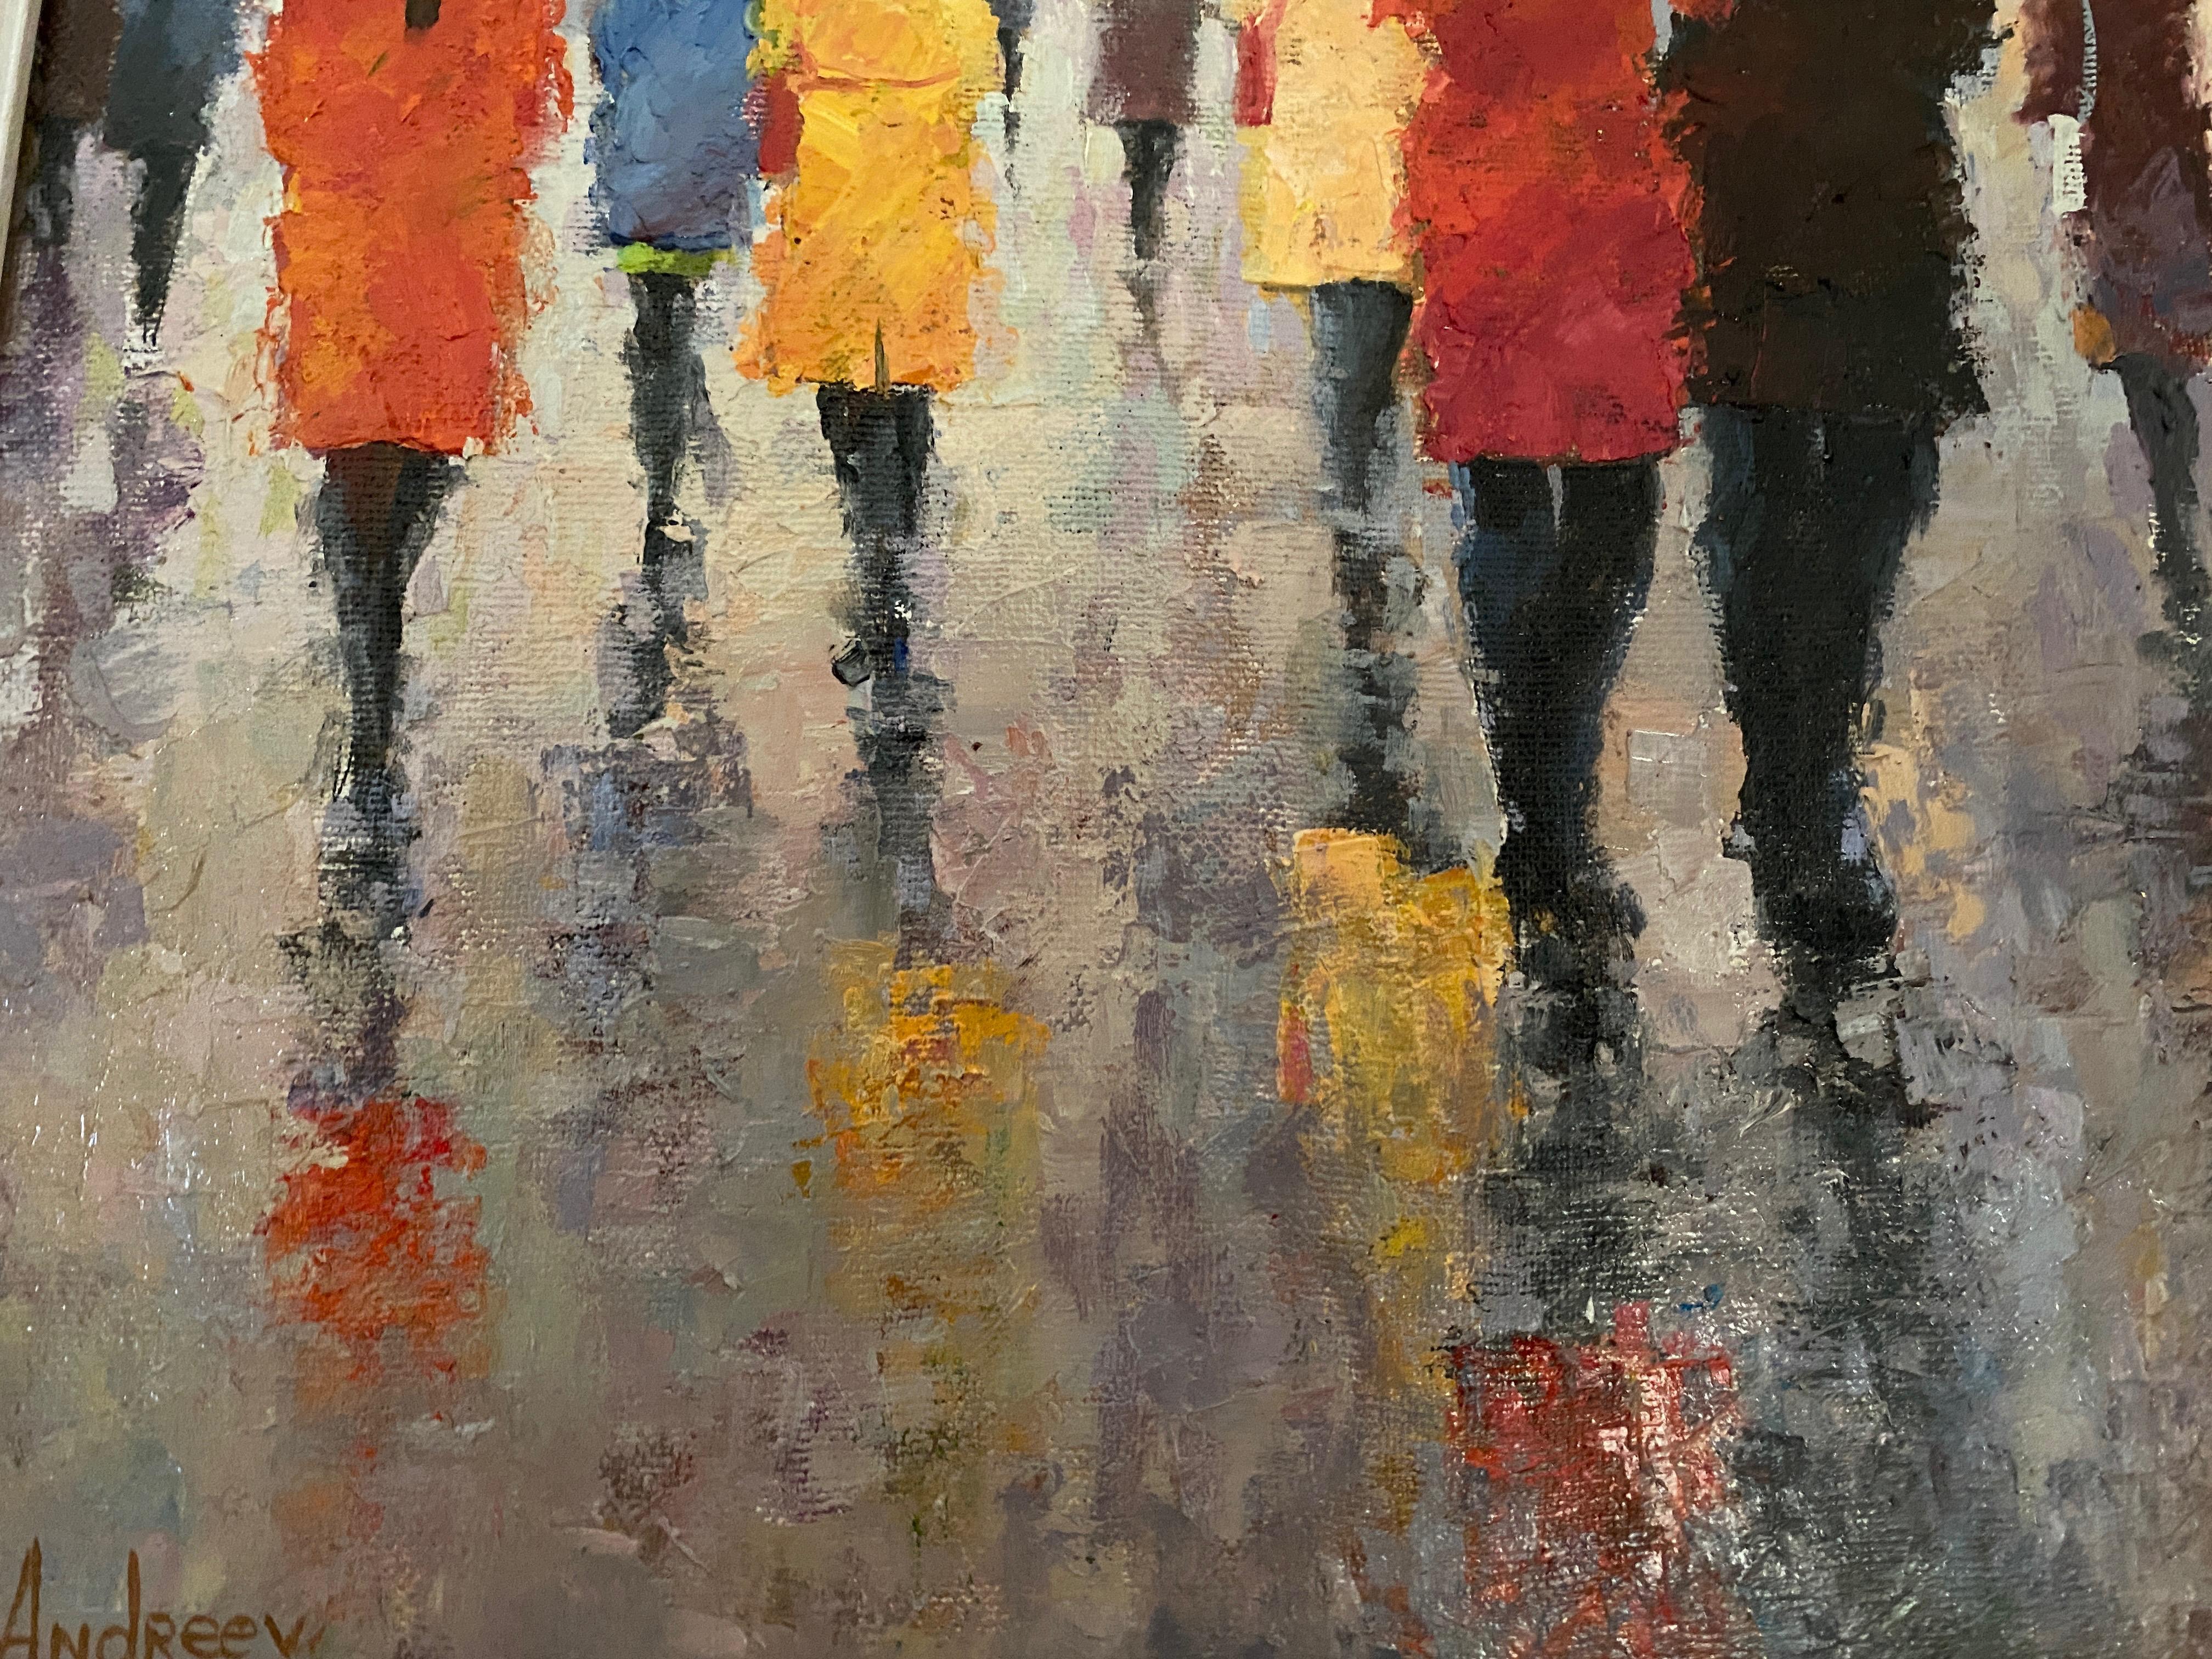 Regentag. Öl auf Leinwand von Vladimir Andreev. Impressionistische Straßenszene.
Maße Kunst: 50 x 40 cm. Gerahmt: 59 x 49 x 3,5 cm
In Zoll:  19.70 x 15.75   in. Gerahmt:  23,23 x 19,3 0 x 1,38 Zoll.
Signiert 